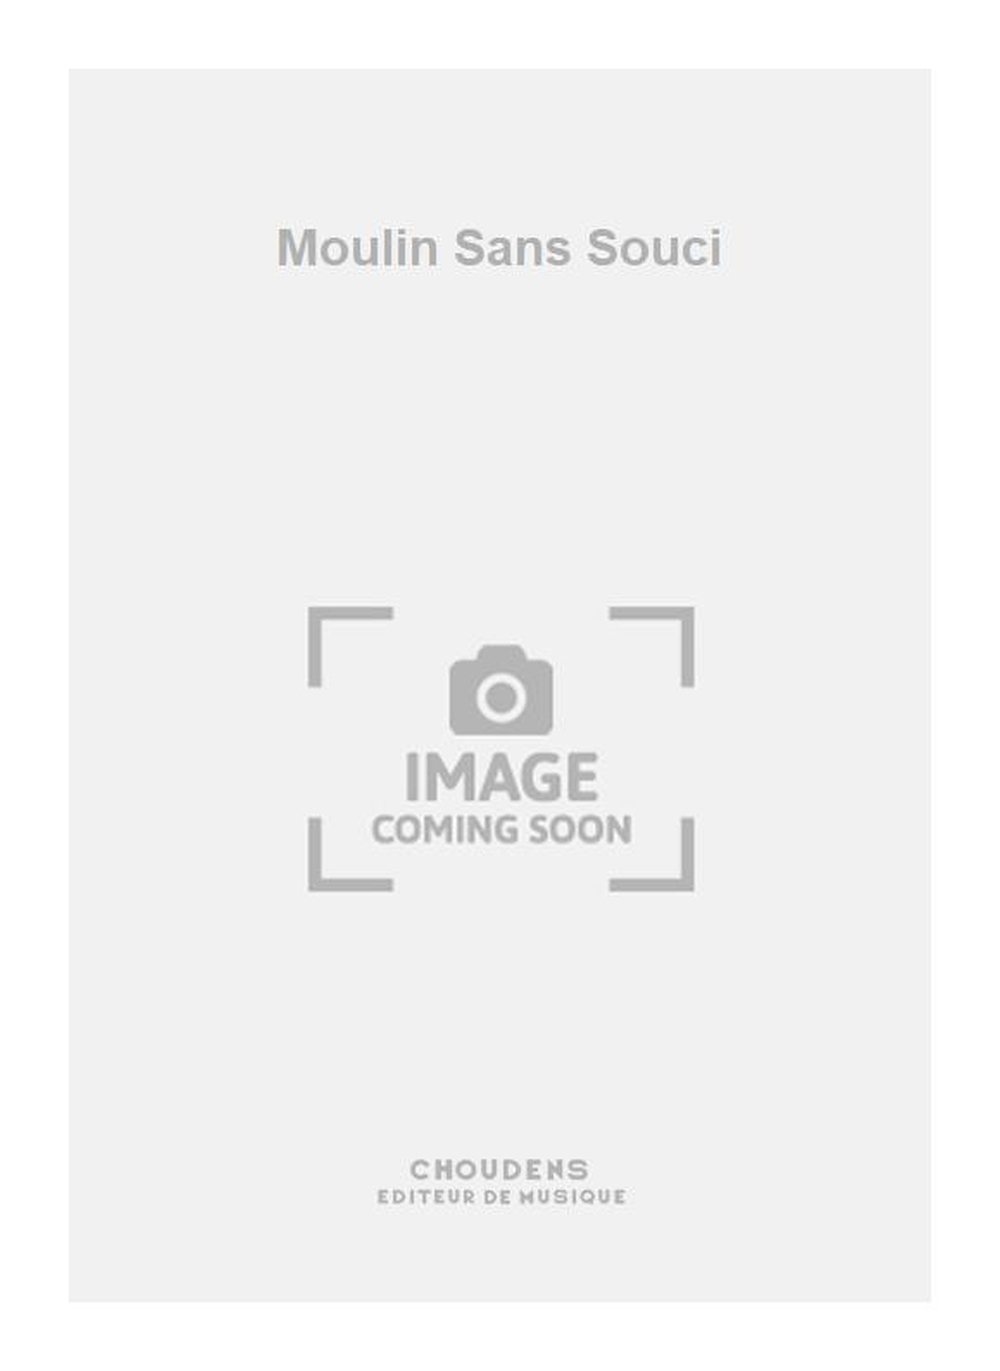 Georges Van Parys: Moulin Sans Souci